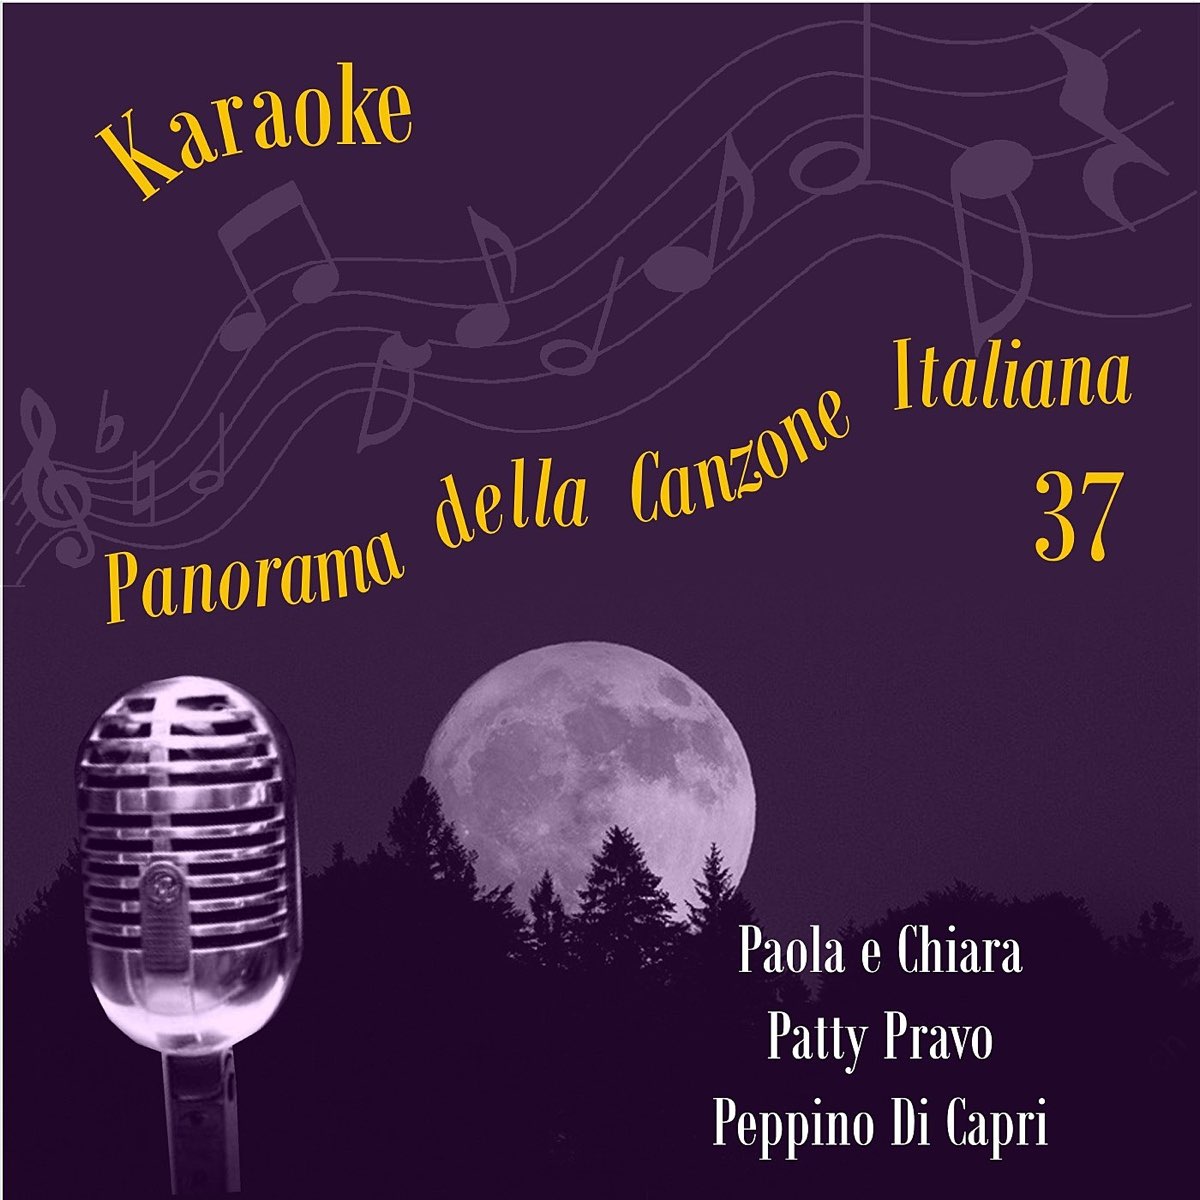 Karaoke, Panorama della Canzone Italiana (Paola e Chiara, Patty Pravo,  Peppino Di Capri), Volume 37 di Karaoke Experts Band su Apple Music